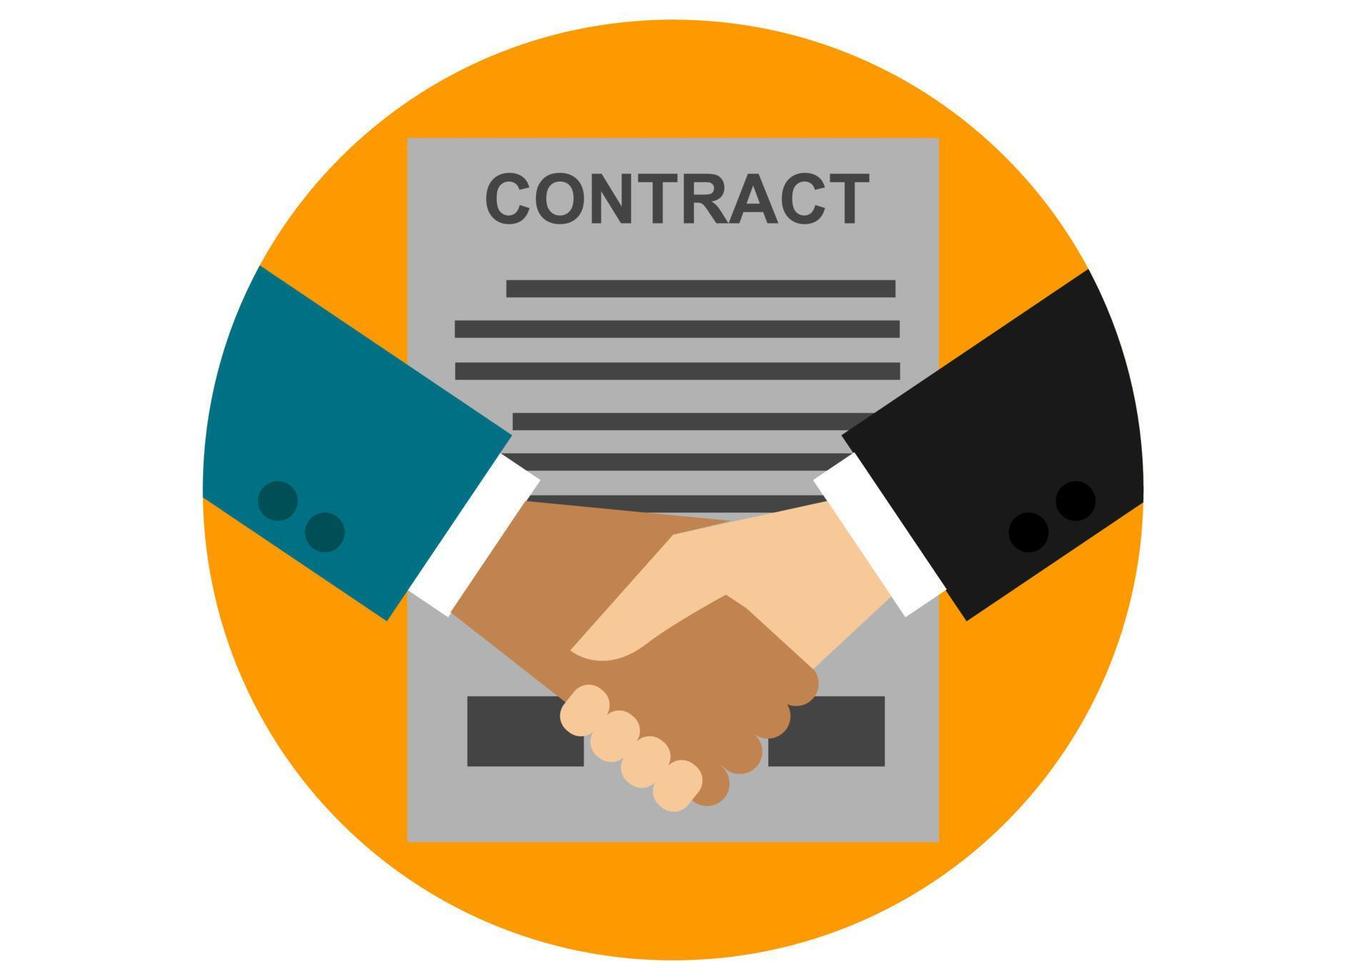 círculo ícone clipart contrato acordo parceria ilustração finança negócio vetor